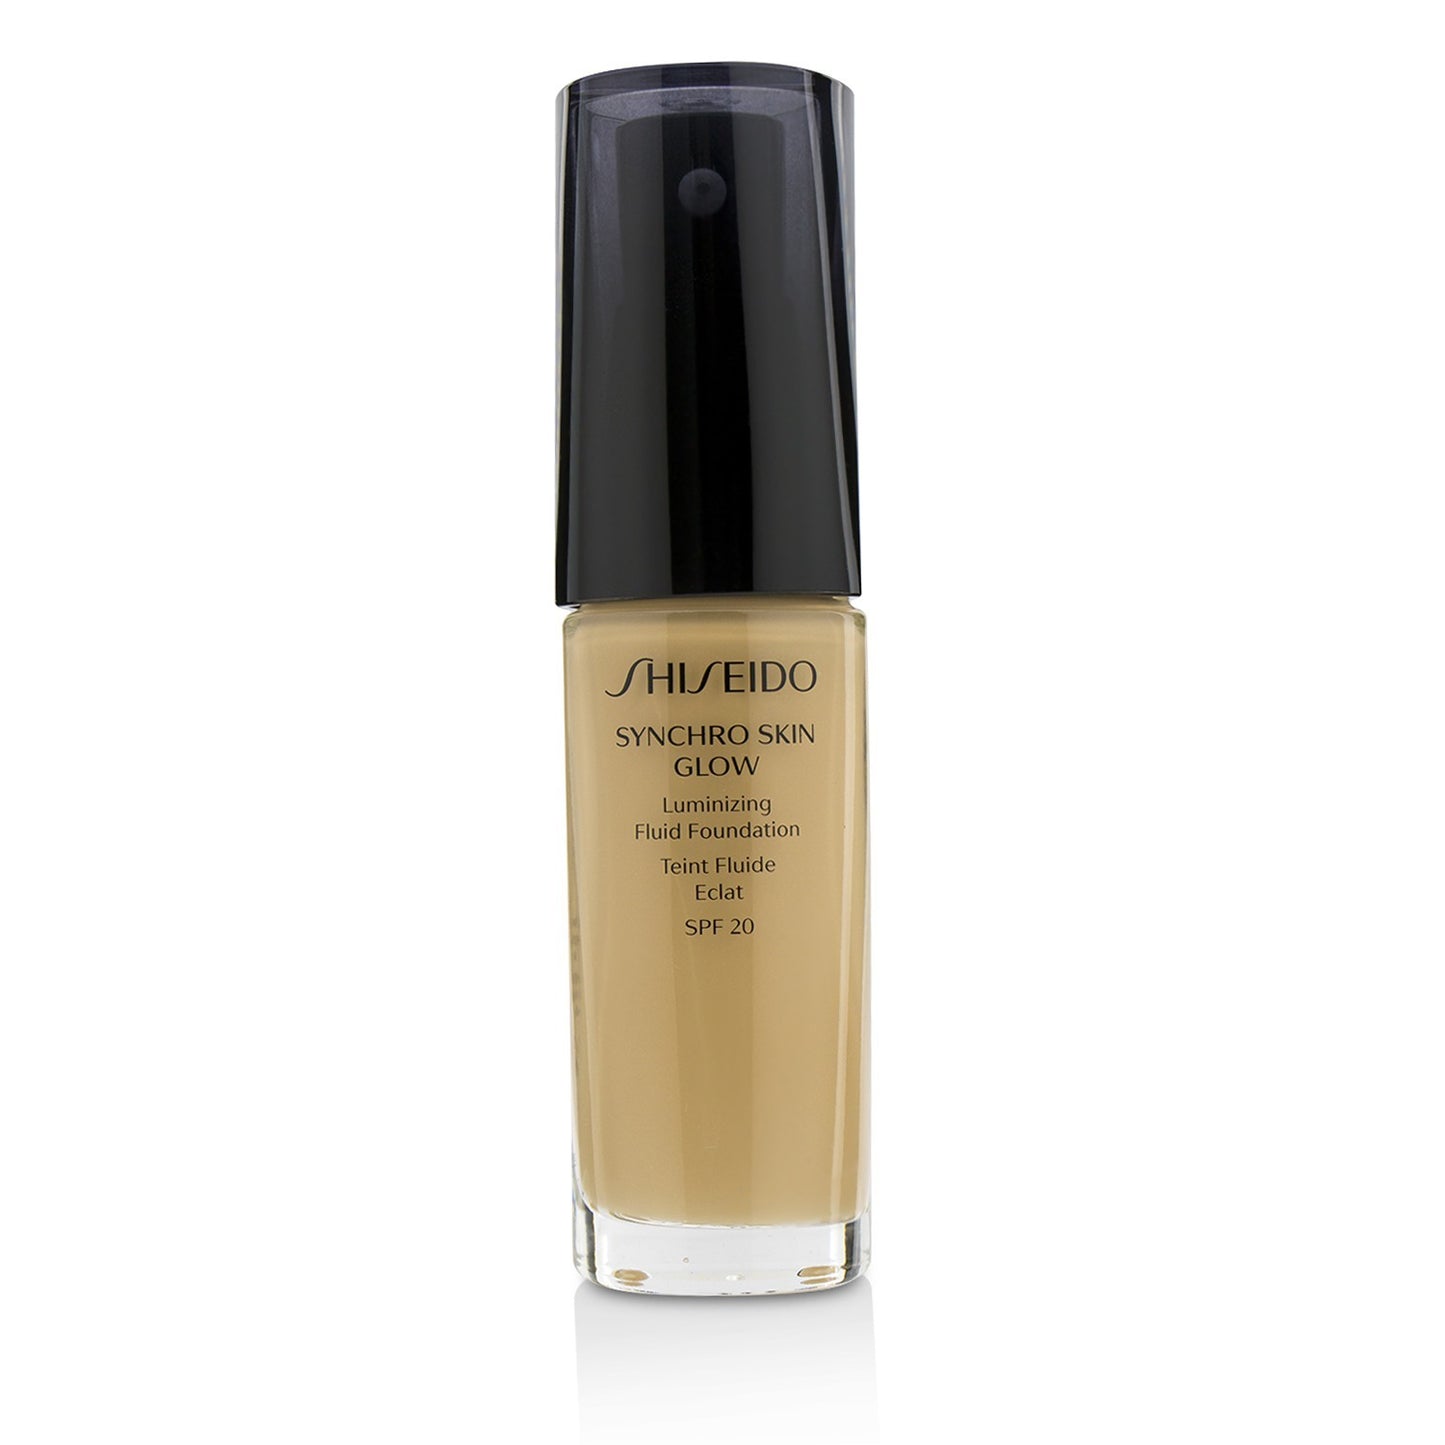 Shiseido Synchro Skin Glow Luminizing Fluid Foundation SPF 20 - N2 Neutral 30 ml / 1 oz